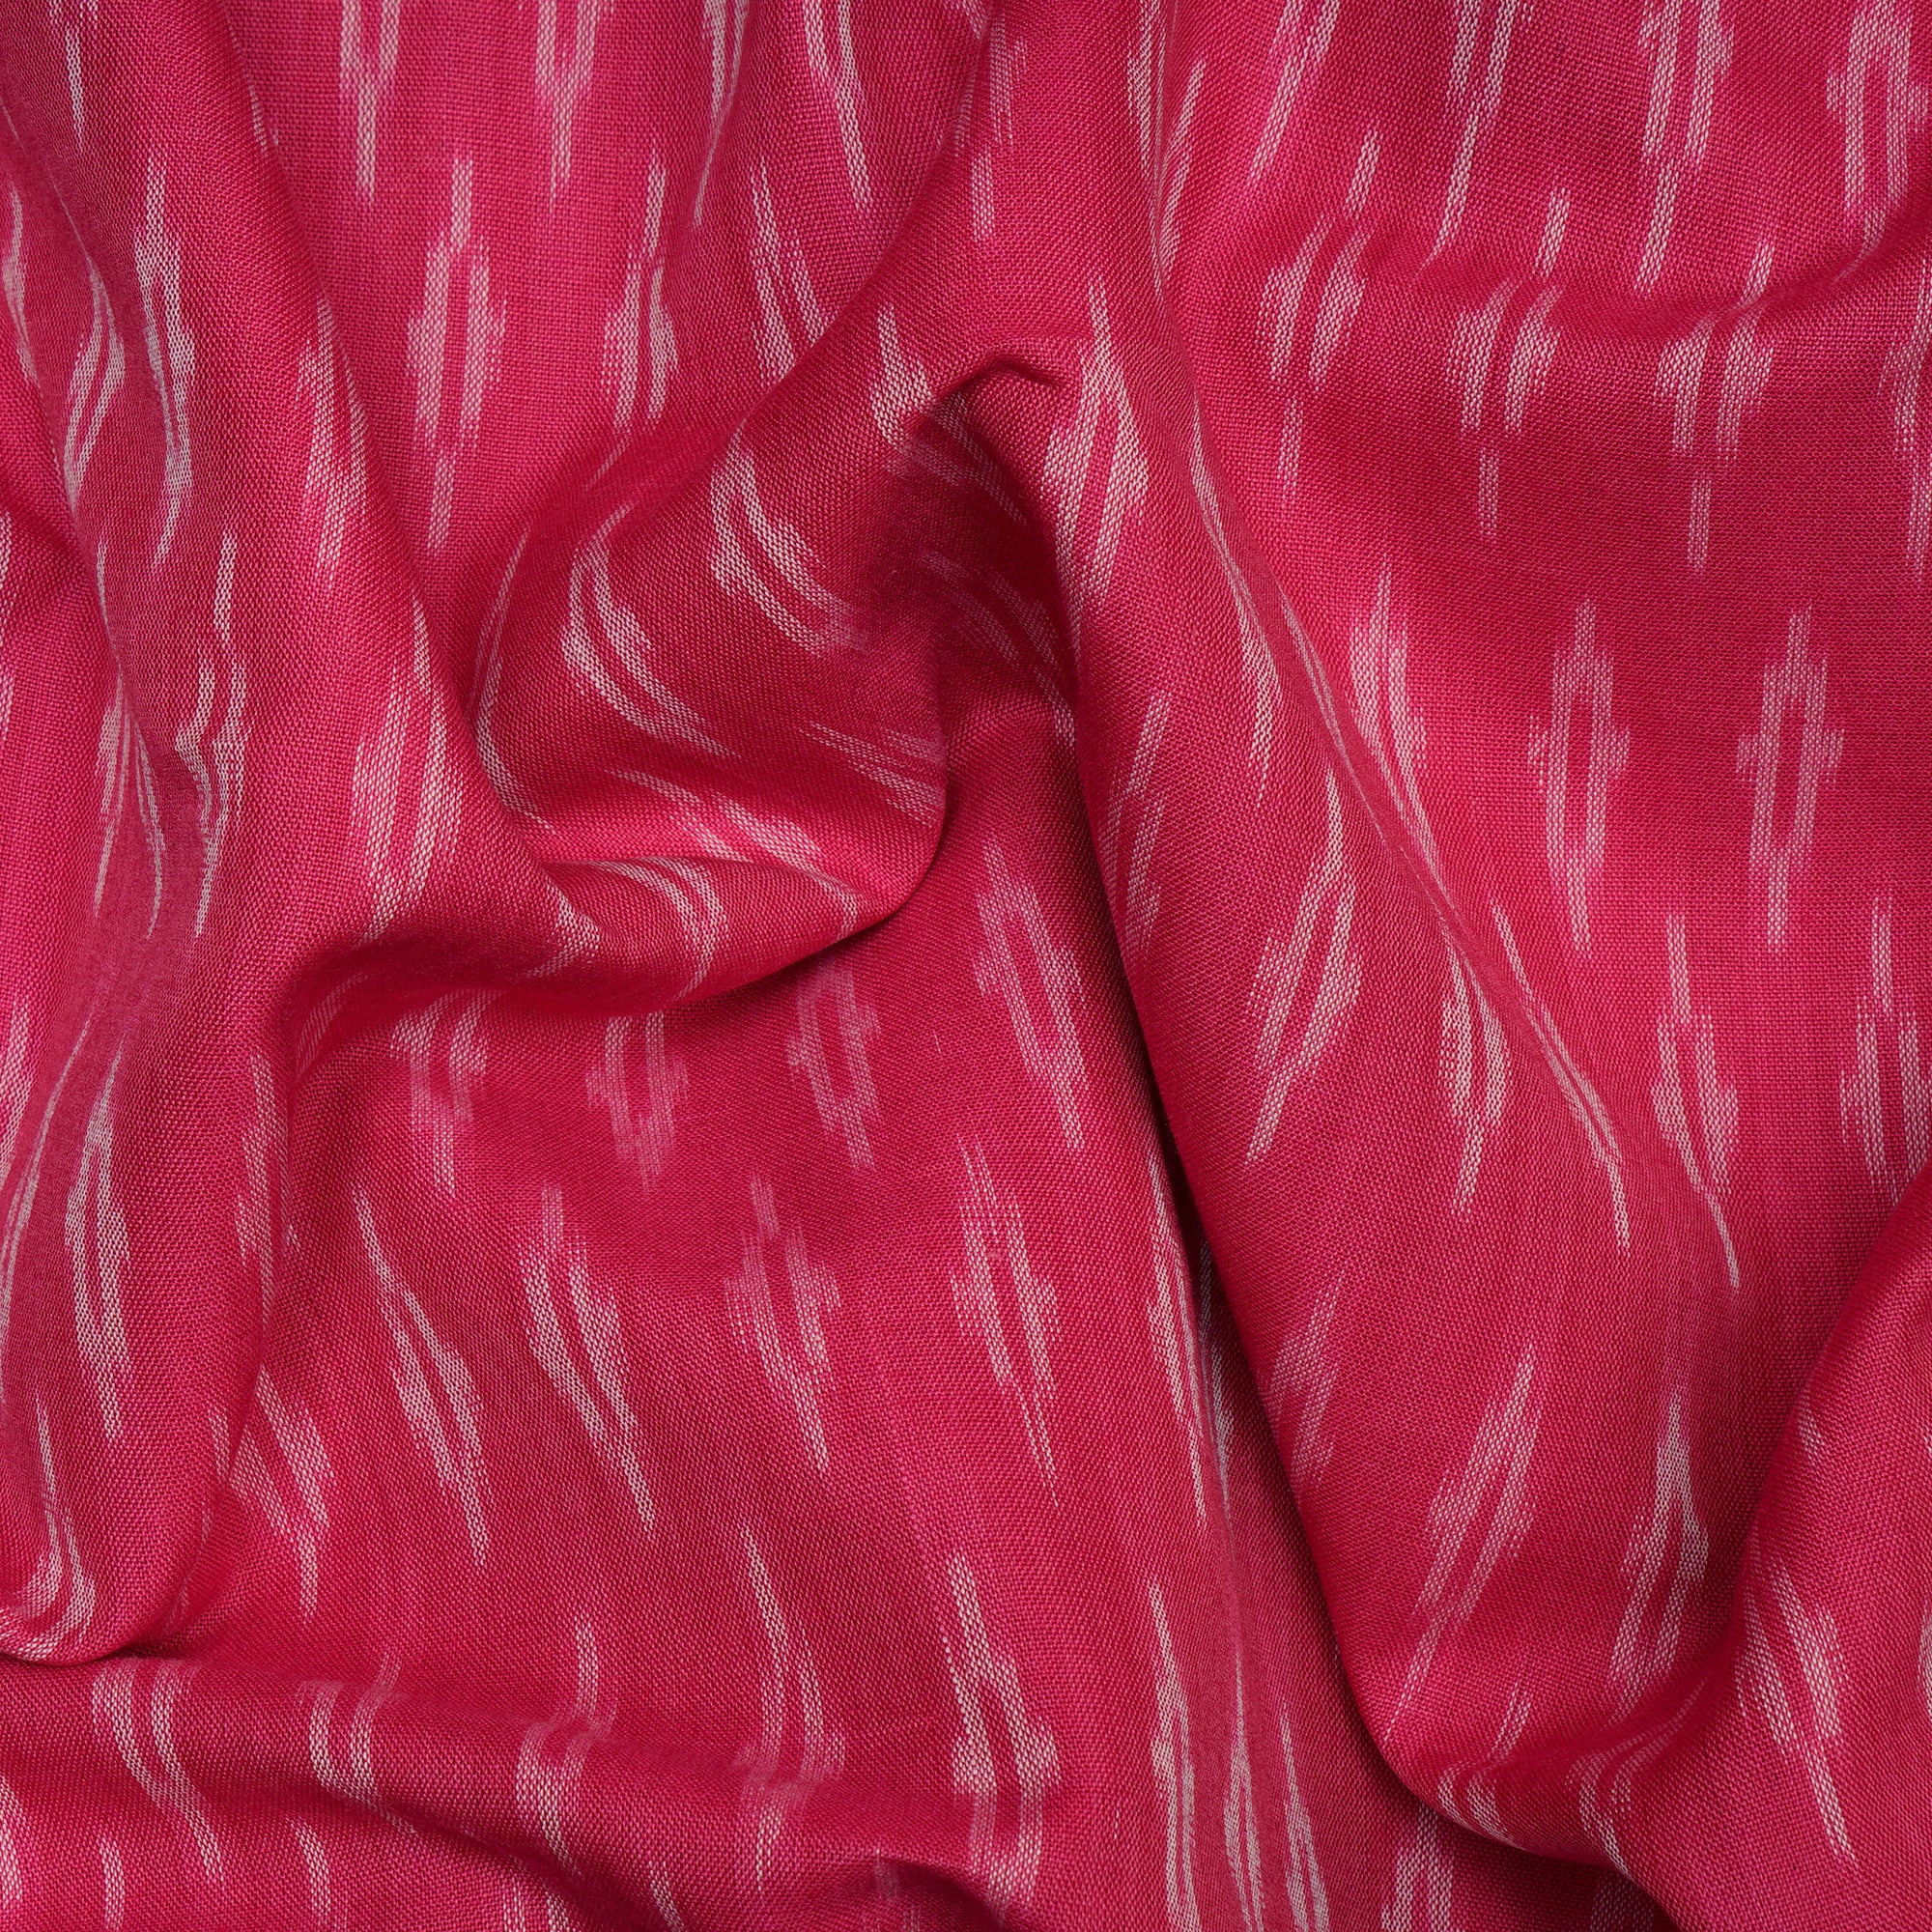 Rani Pink 2/120 Mercerized Washed Woven Ikat Cotton Fabric